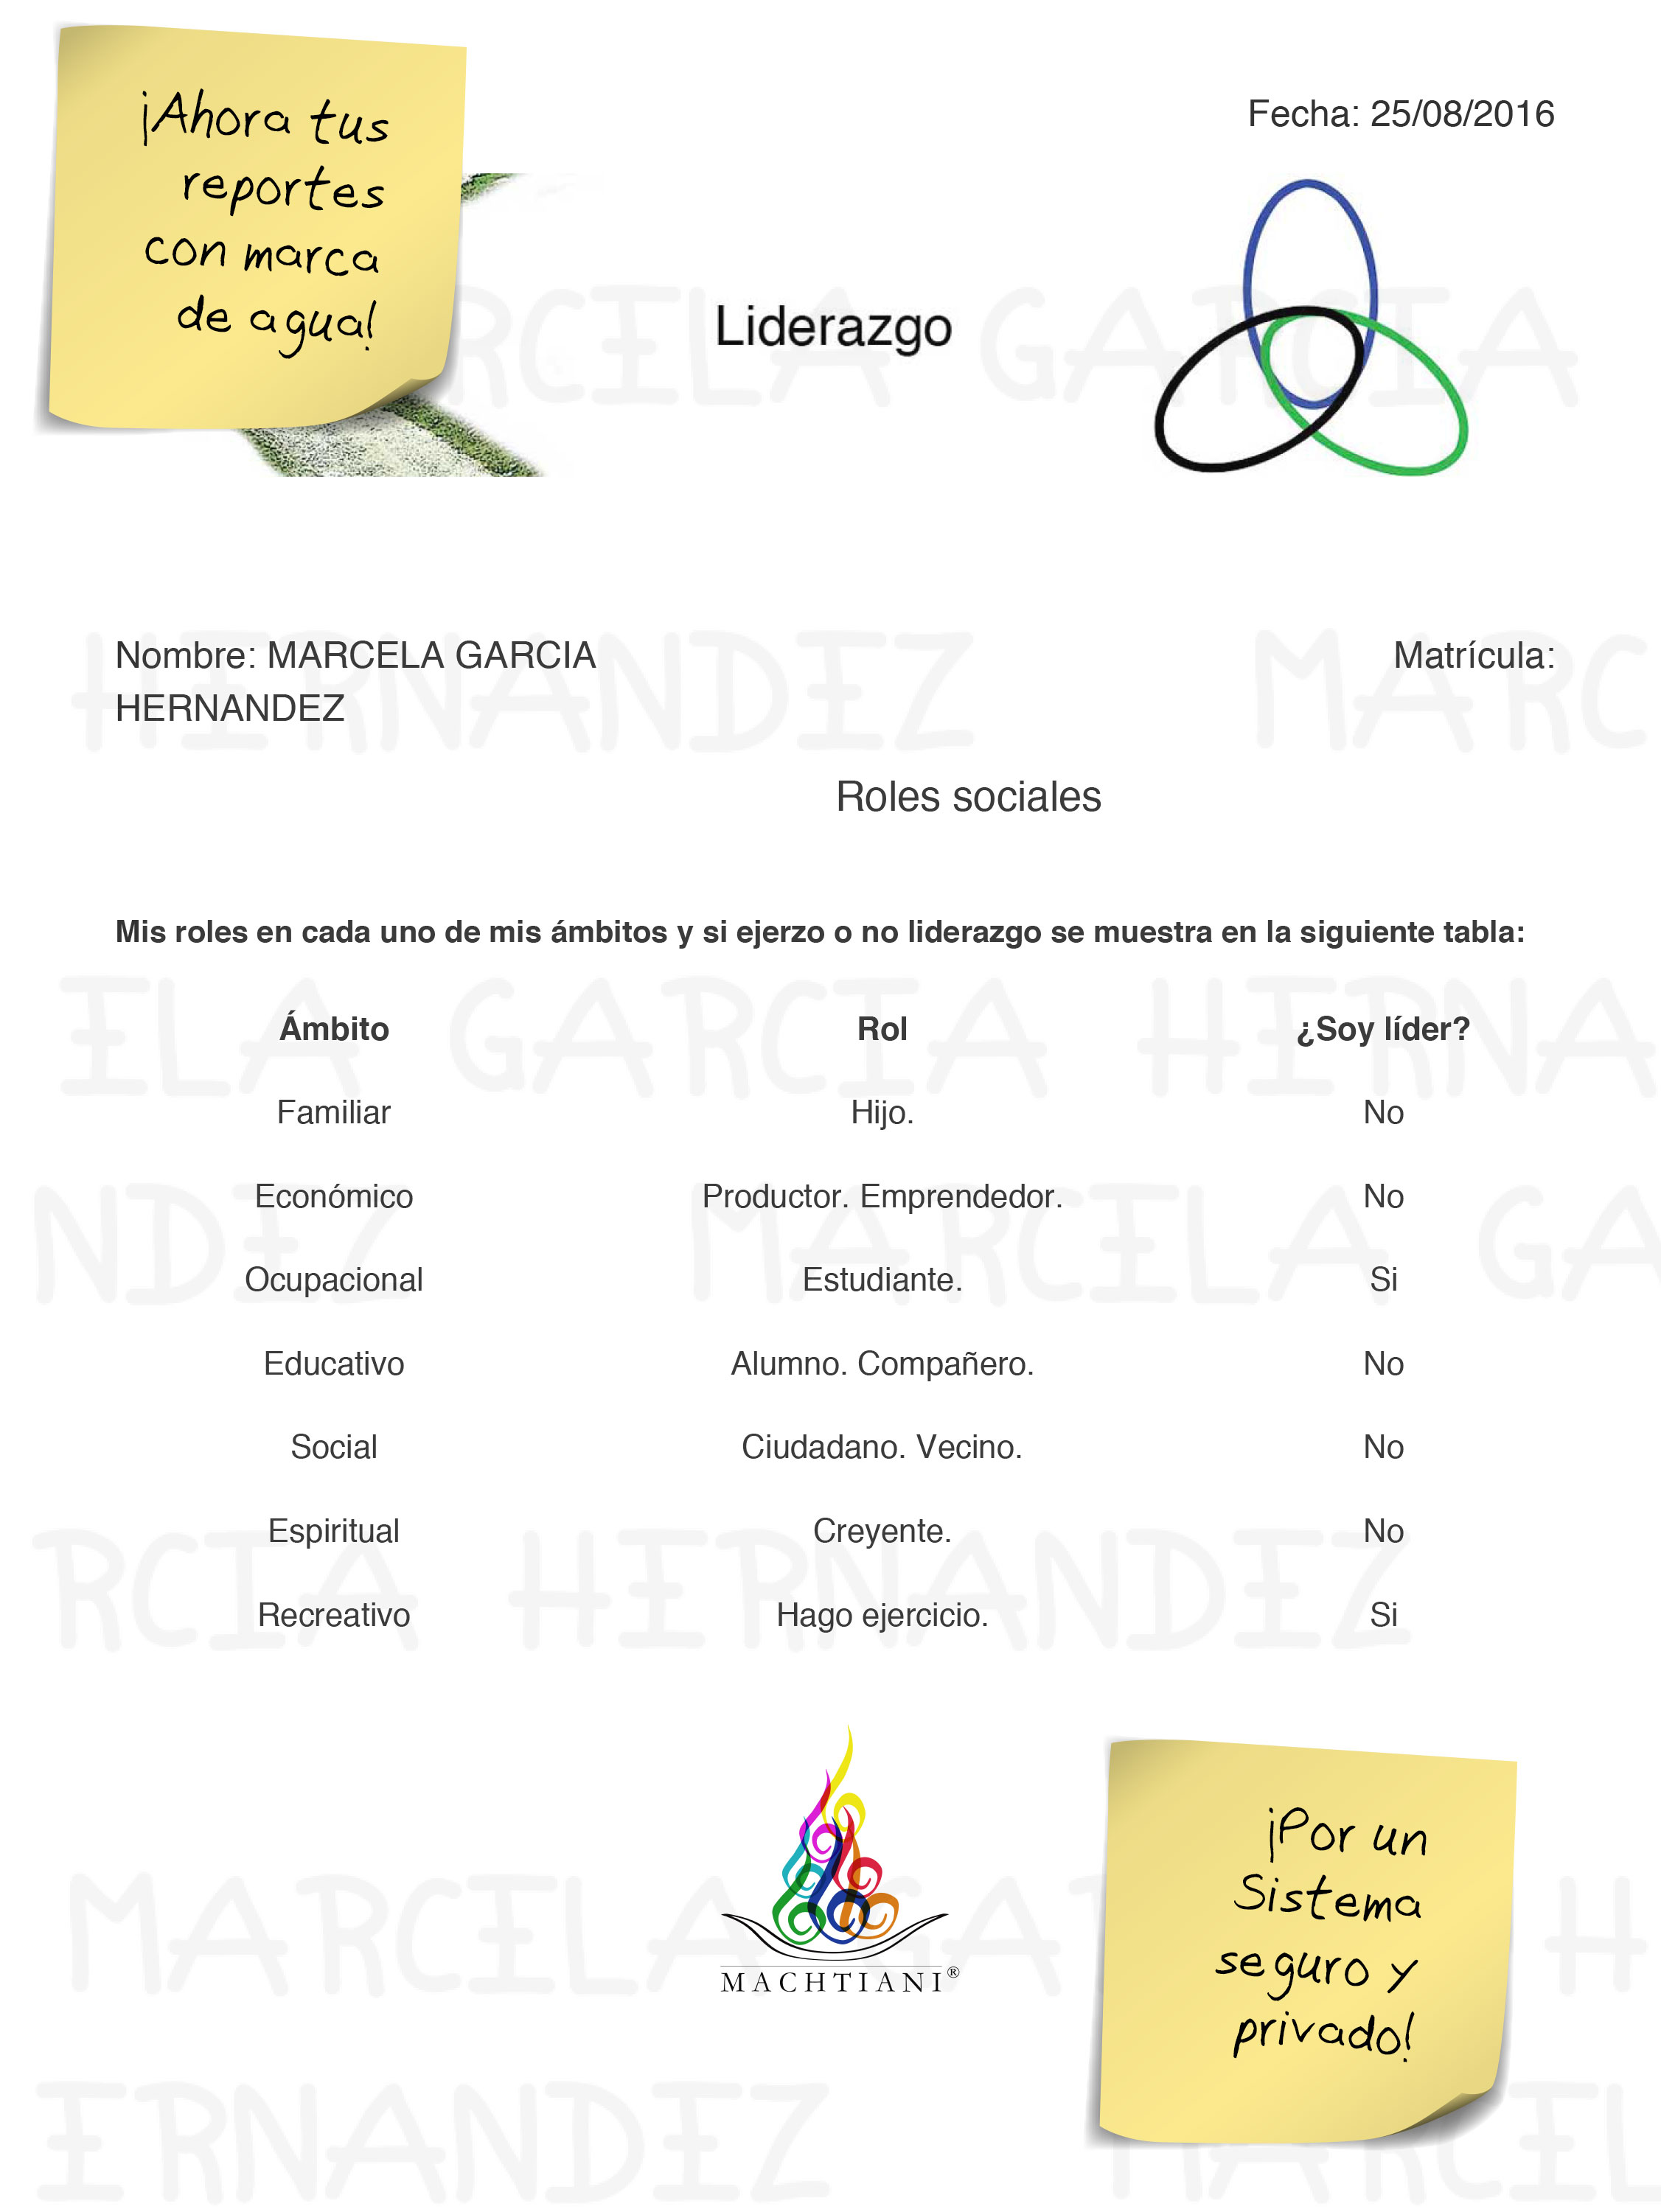 plataforma de Liderazgo, Liderazgo México, reportes digitales, portafolio digital, autoconocimiento